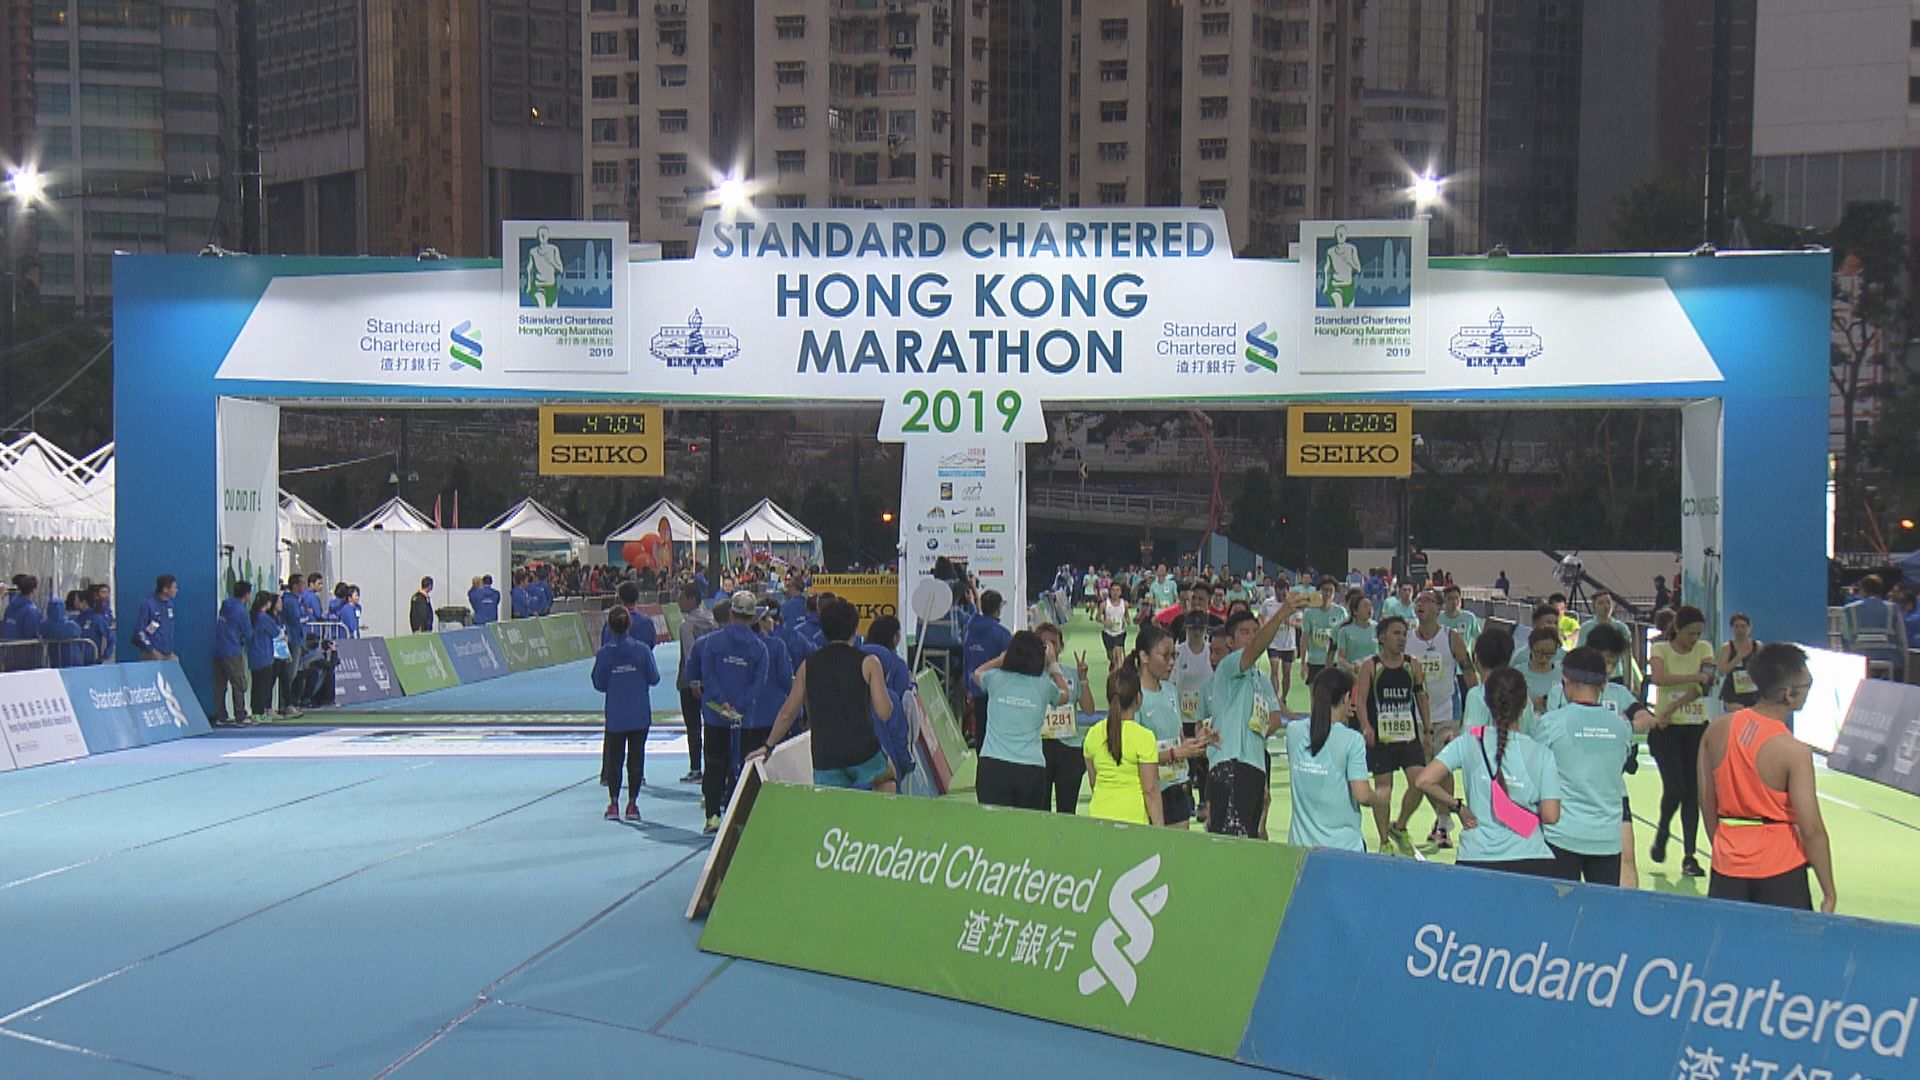 渣打香港馬拉松如期10月24日舉行